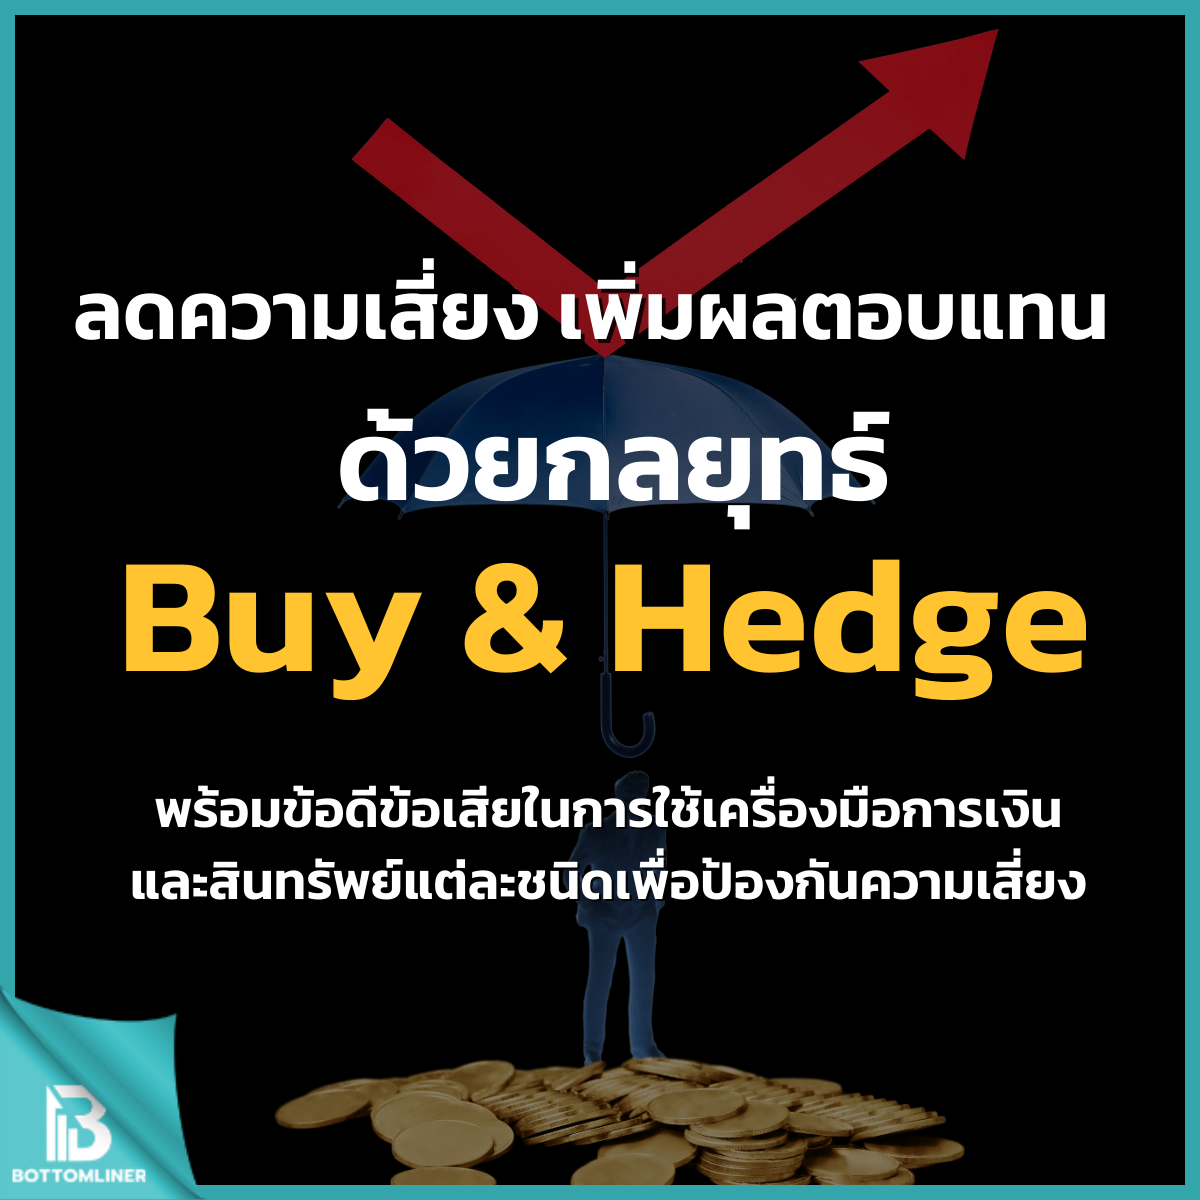 ลดความเสี่ยง เพิ่มผลตอบแทน ด้วยกลยุทธ์ Buy & Hedge